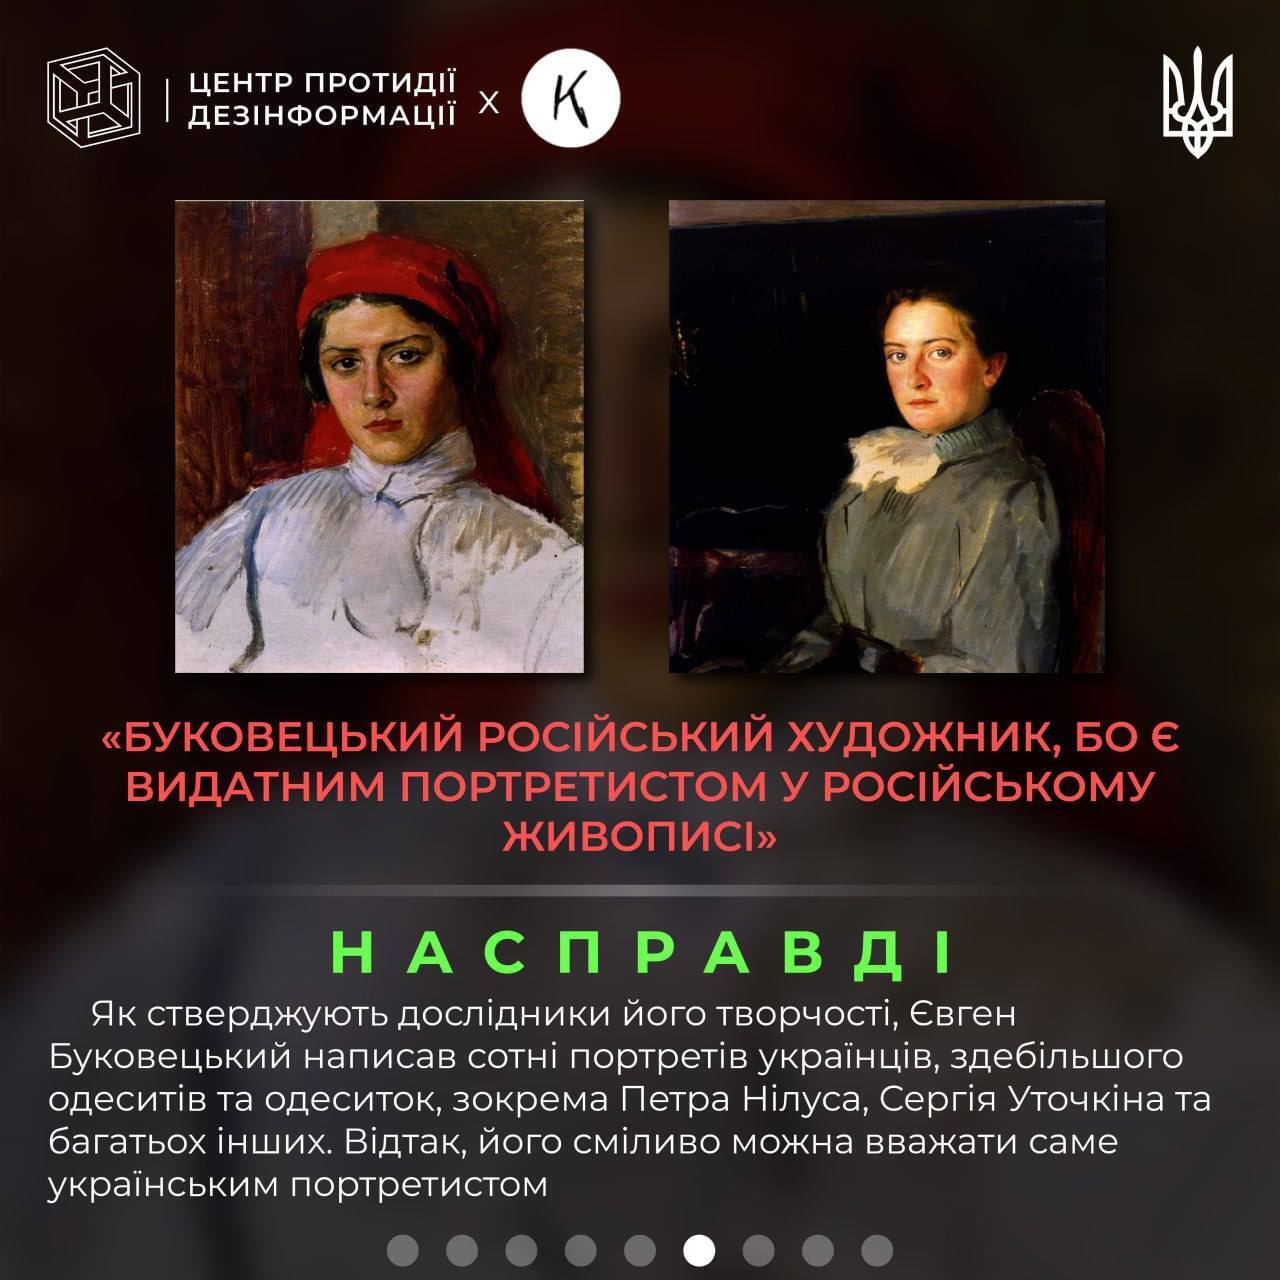 Росія намагається "присвоїти" українського художника Євгена Буковецького